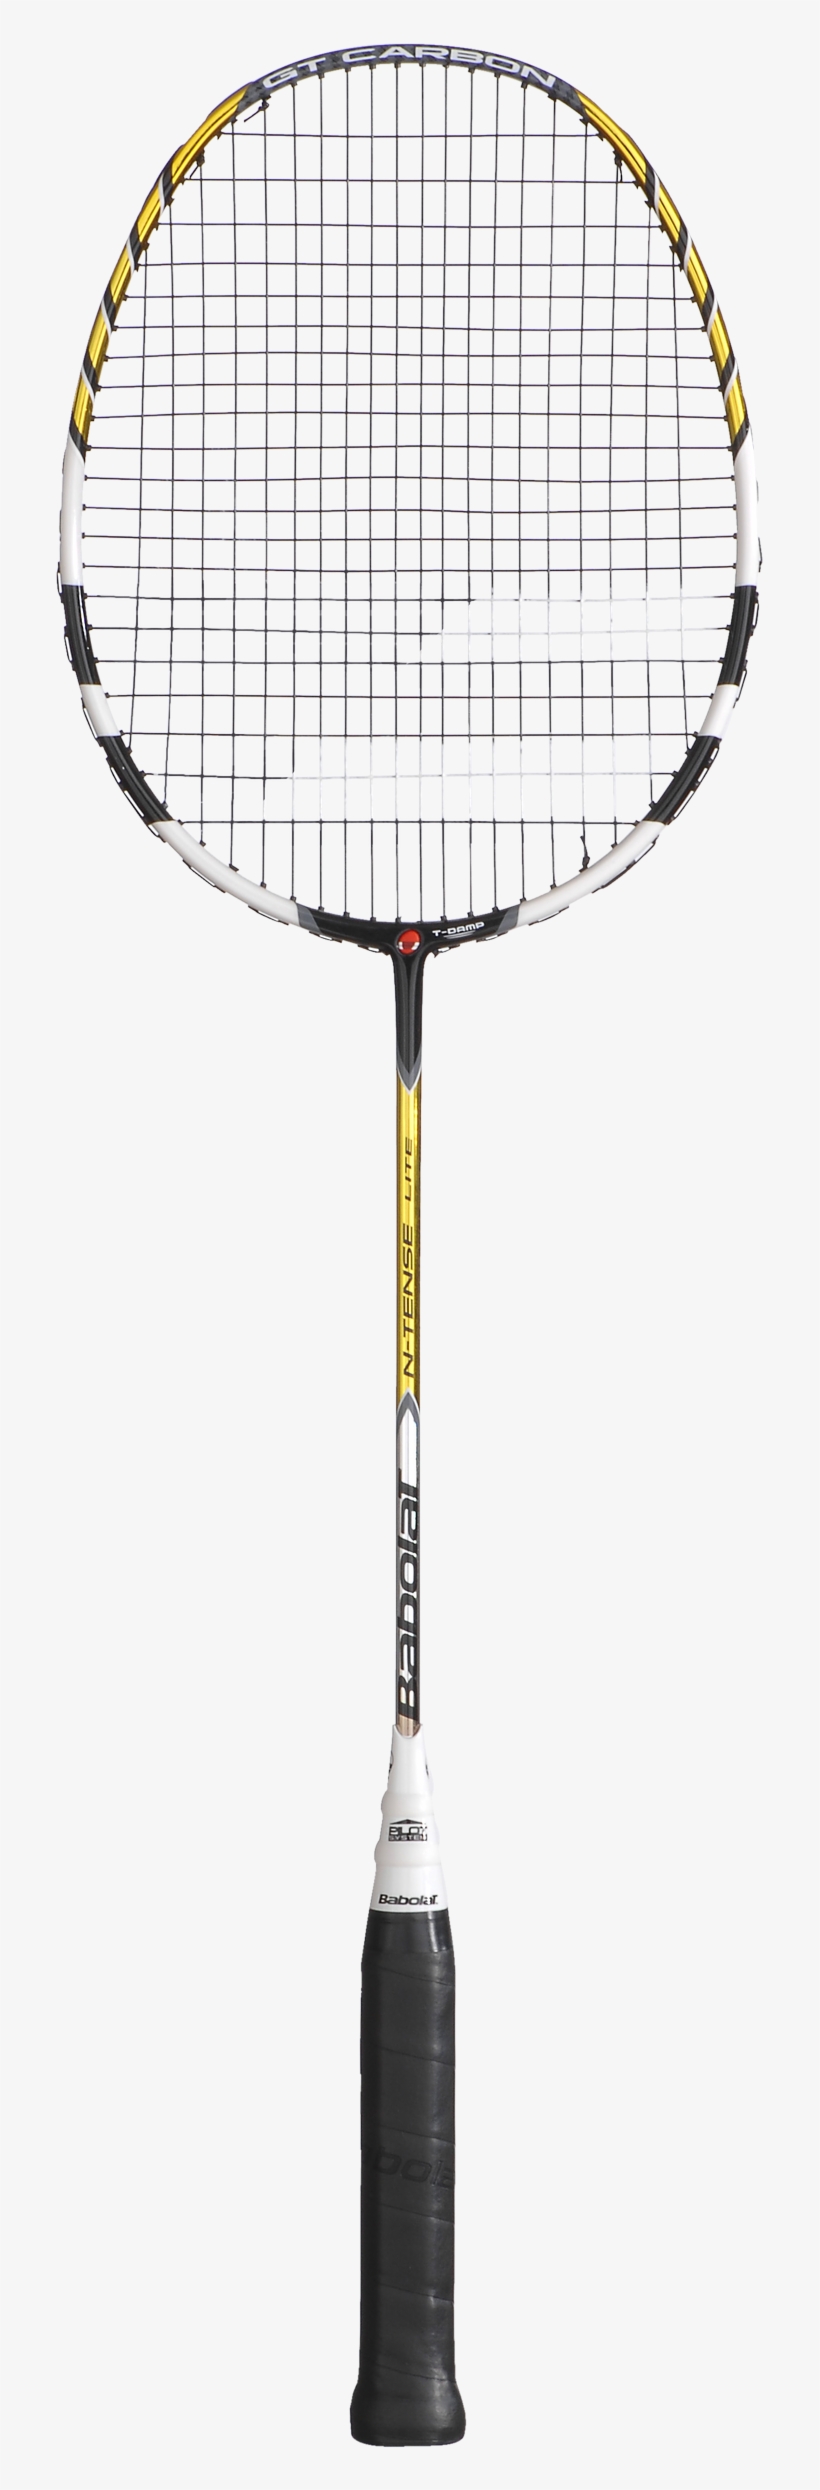 Babolat N-tense Lite Badminton Racket - Talbot Torro Isoforce 511.8, transparent png #8061997